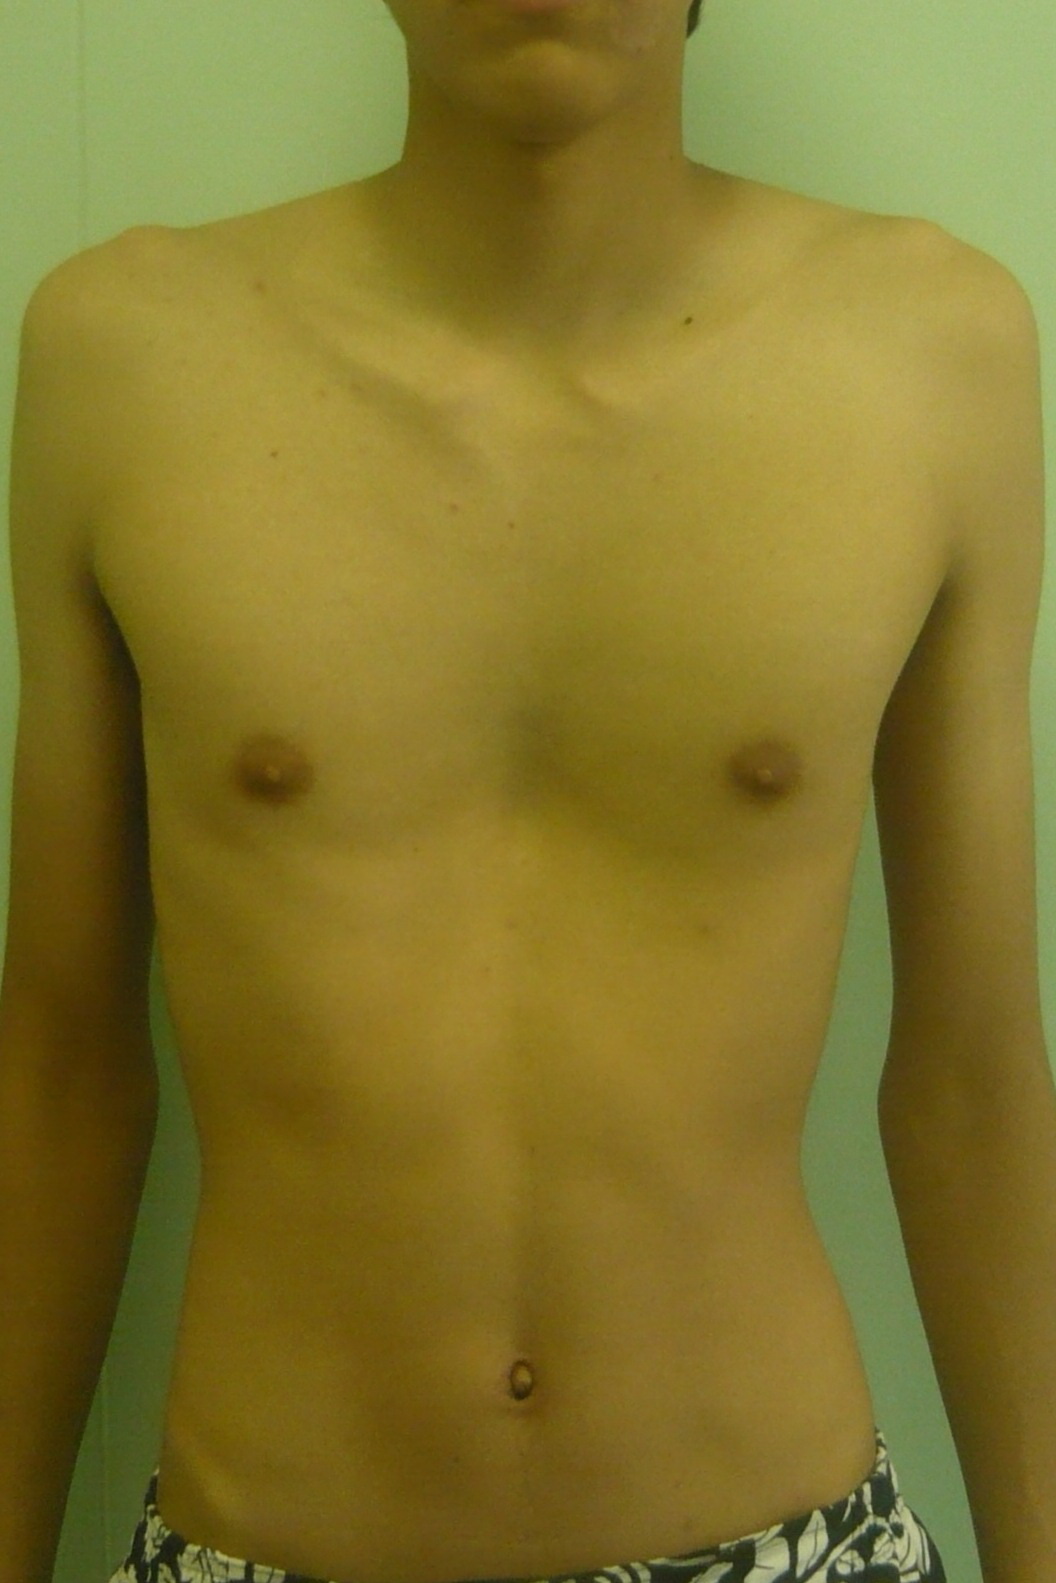 Результаты операции - грудь сапожника Хирургия воронкообразной деформации грудной клетки